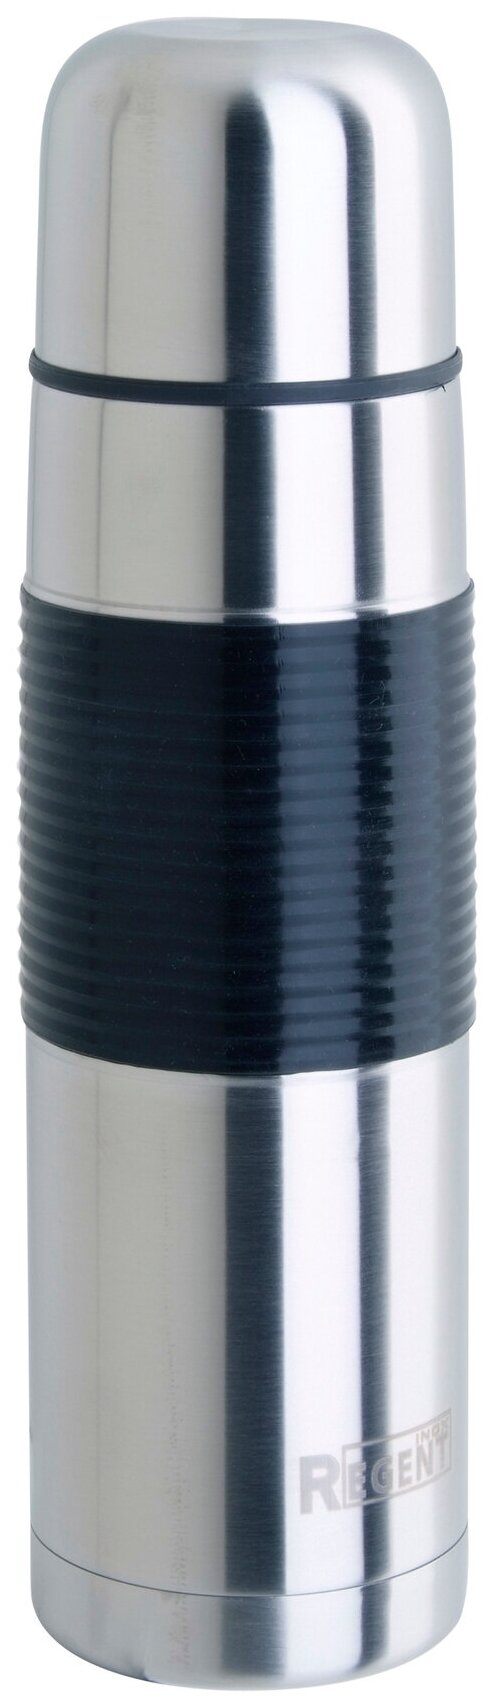 Классический термос REGENT inox Bullet 93-TE-B-2-500 0.5 л